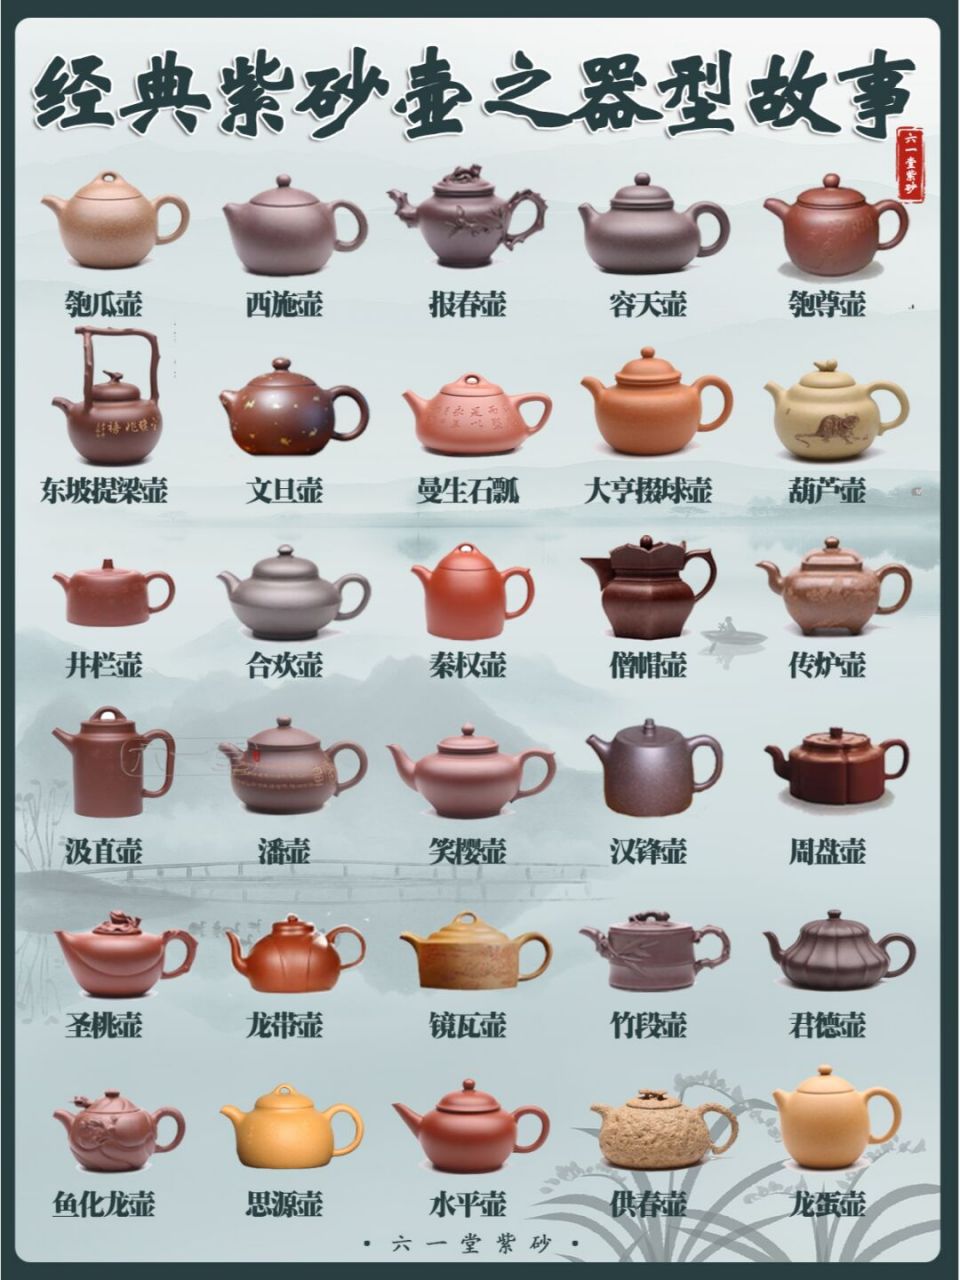 茶具名称 图解图片